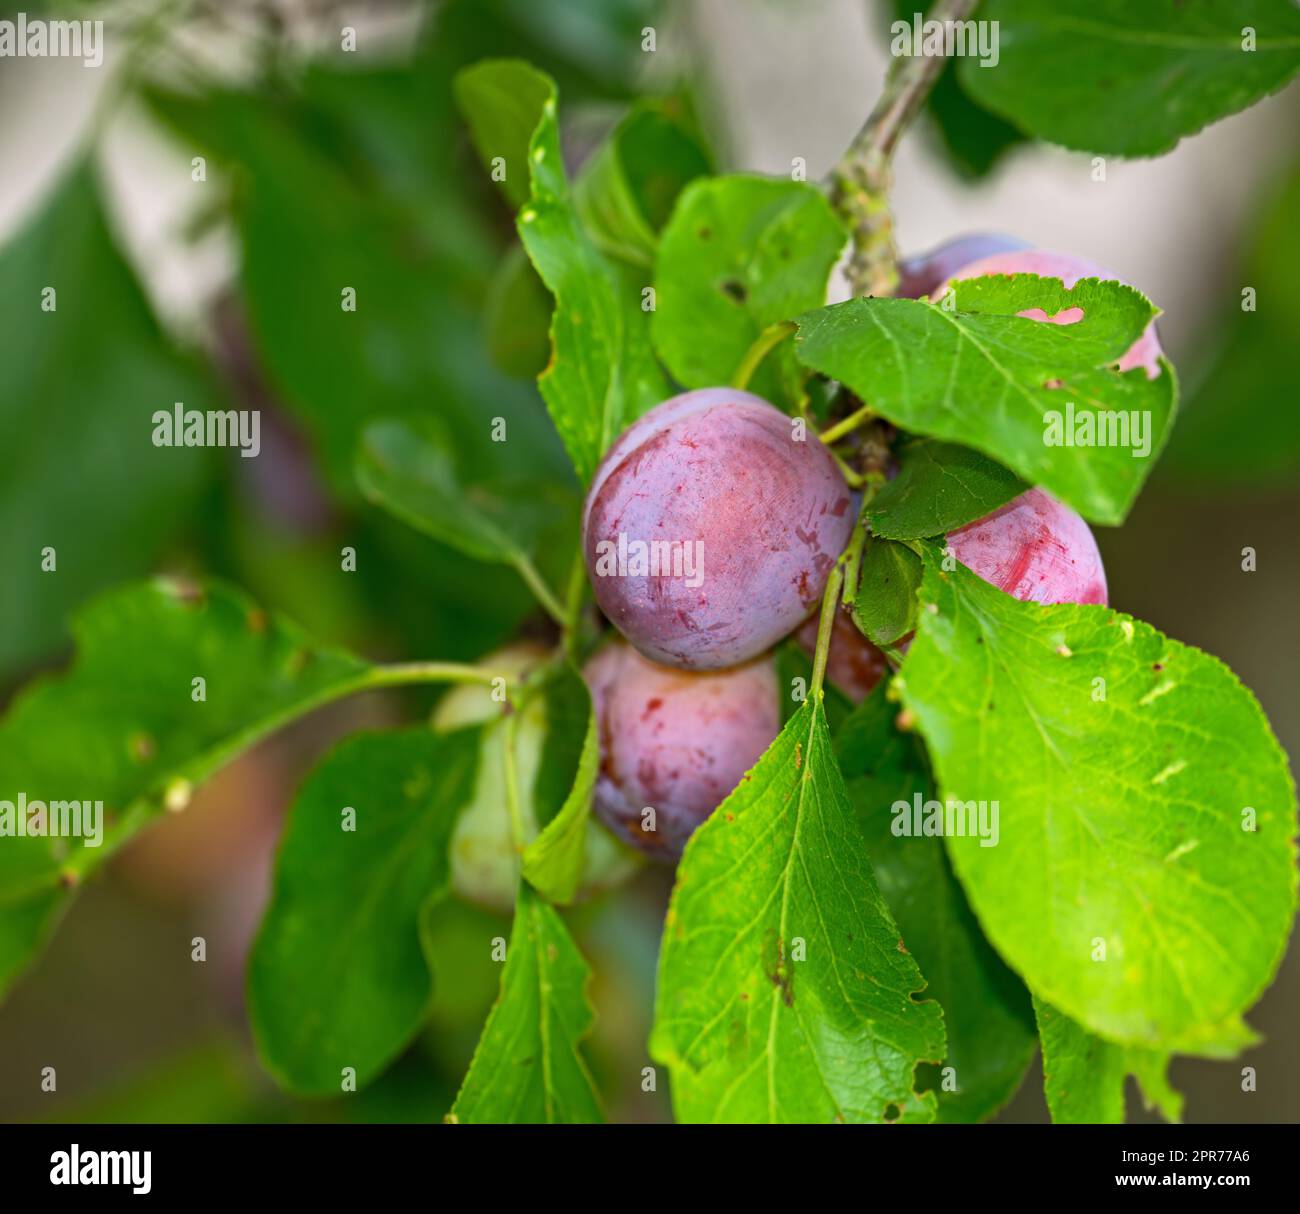 Primo piano delle prugne viola che crescono su un ramo verde di prugne in un giardino domestico. Texture dettaglio di gruppo di frutta sana e dolce appesa a un fusto vibrante in un cortile. Frutta snocciolata utilizzata per il dessert Foto Stock